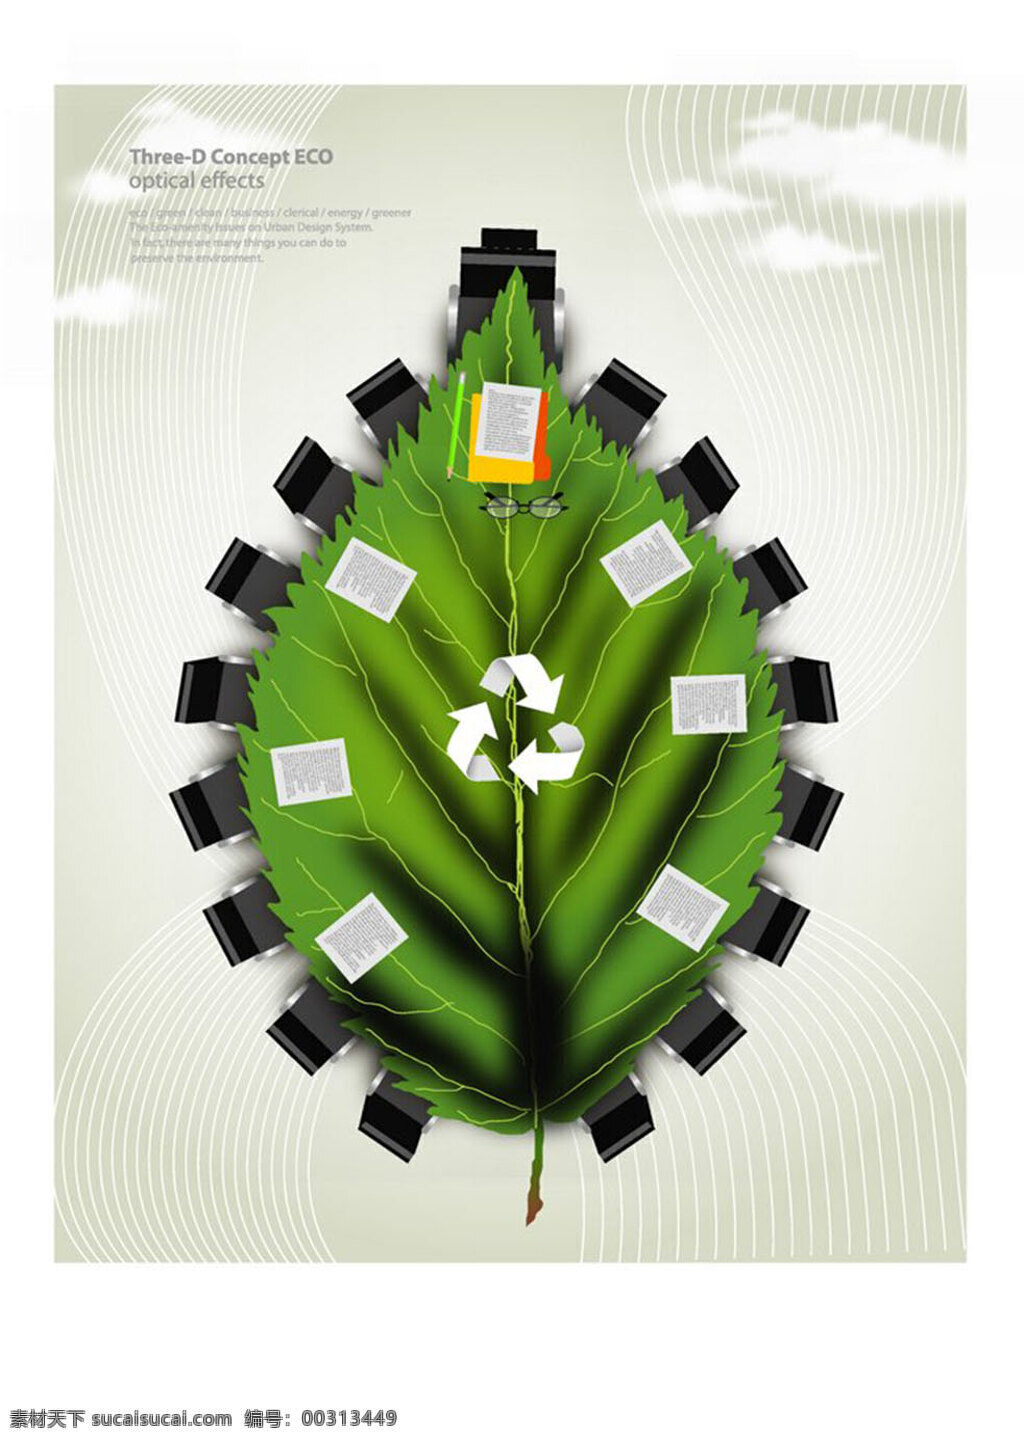 环境保护 能源保护 绿色环保 环保宣传海报 空间环境 矢量素材 圆形 草地